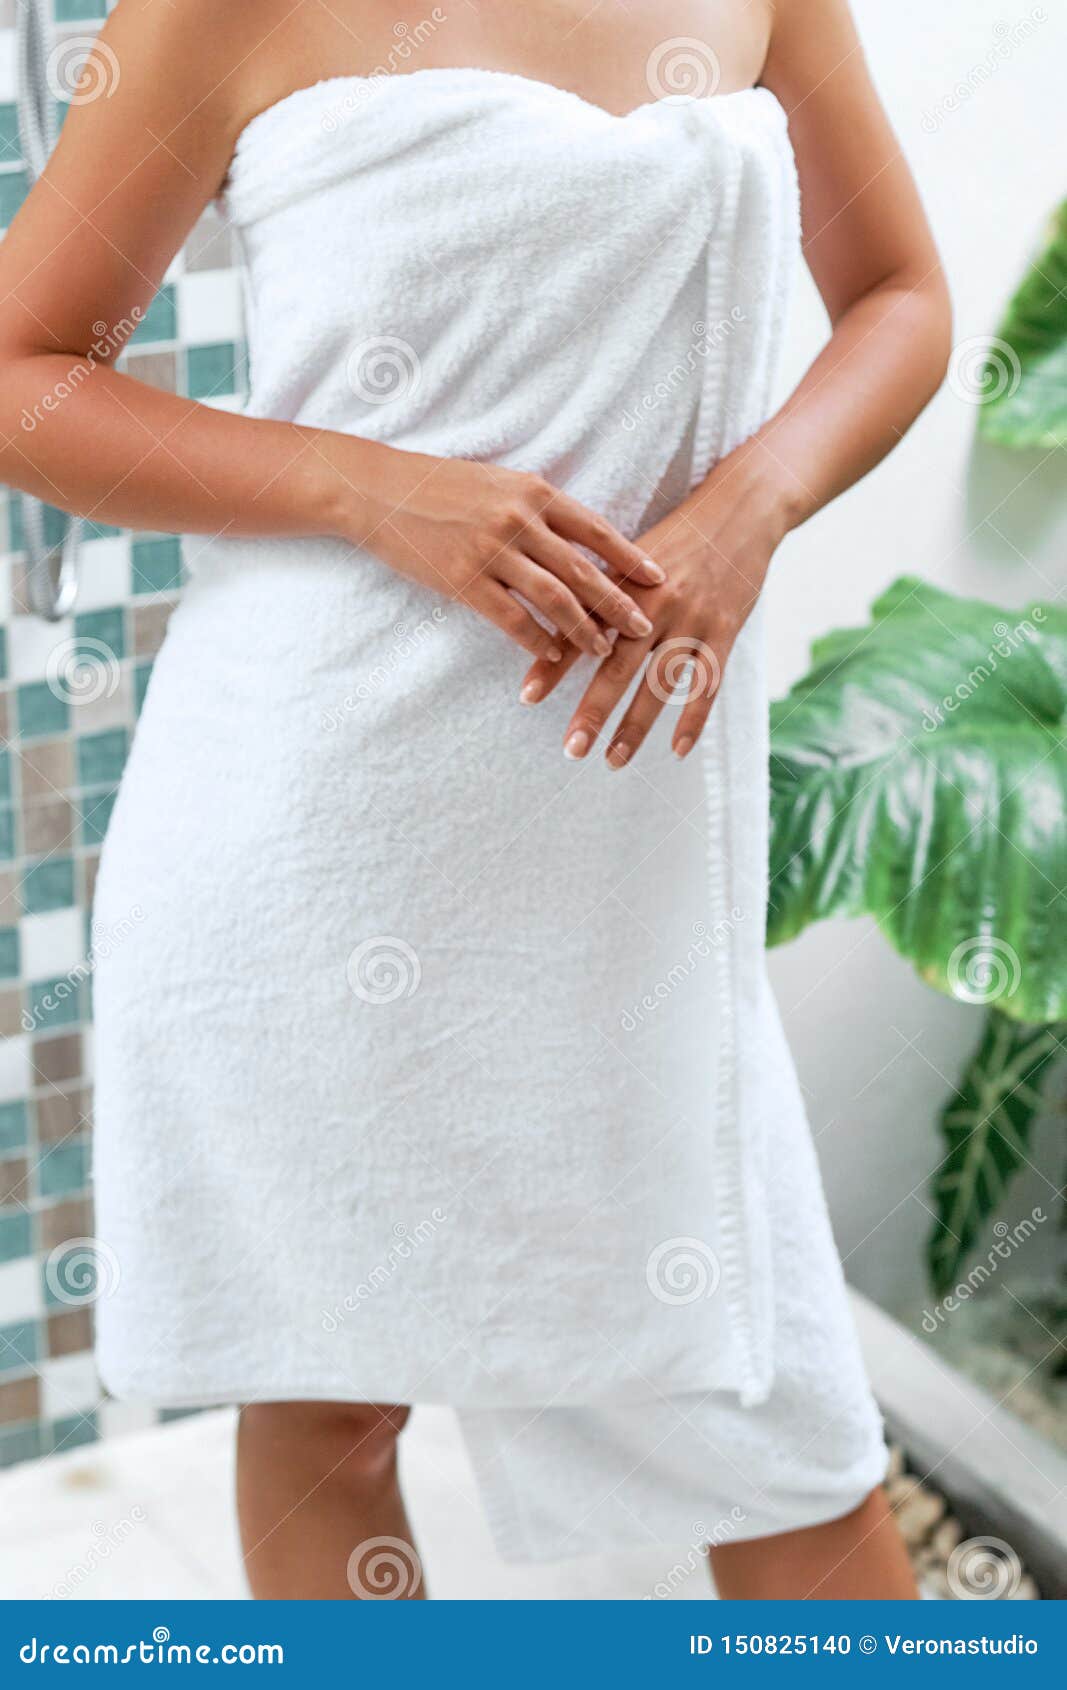 Мама вышла из душа. Девушка в полотенце. Красивая девушка в полотенце. Девушка в белом полотенце. Фотосессия в полотенце.